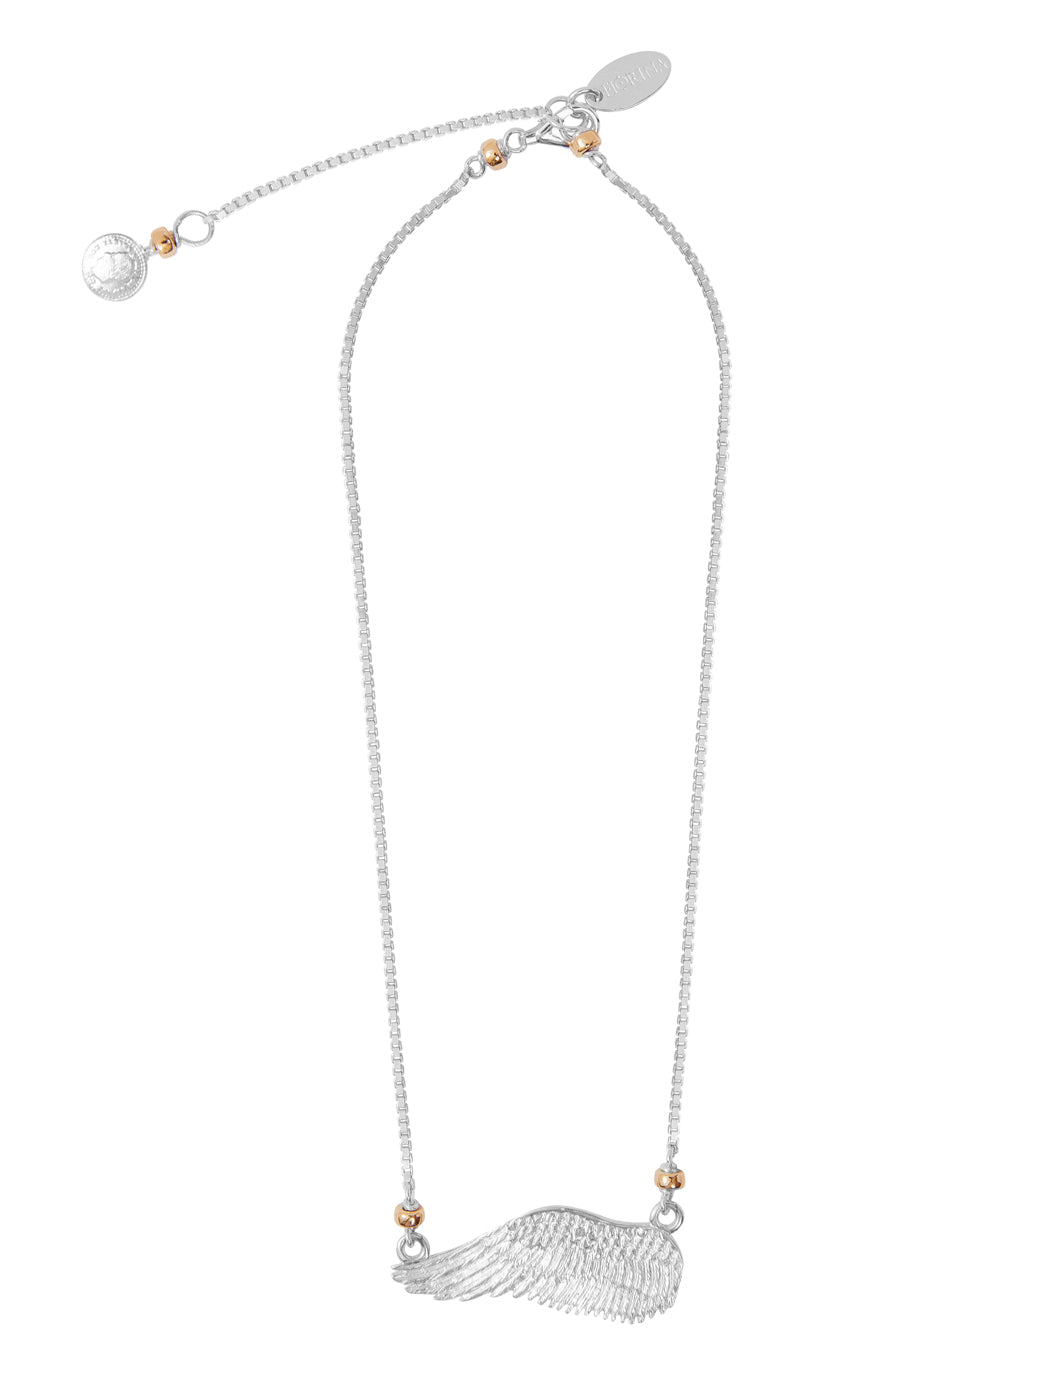 Fiorina Jewellery Aria Necklace